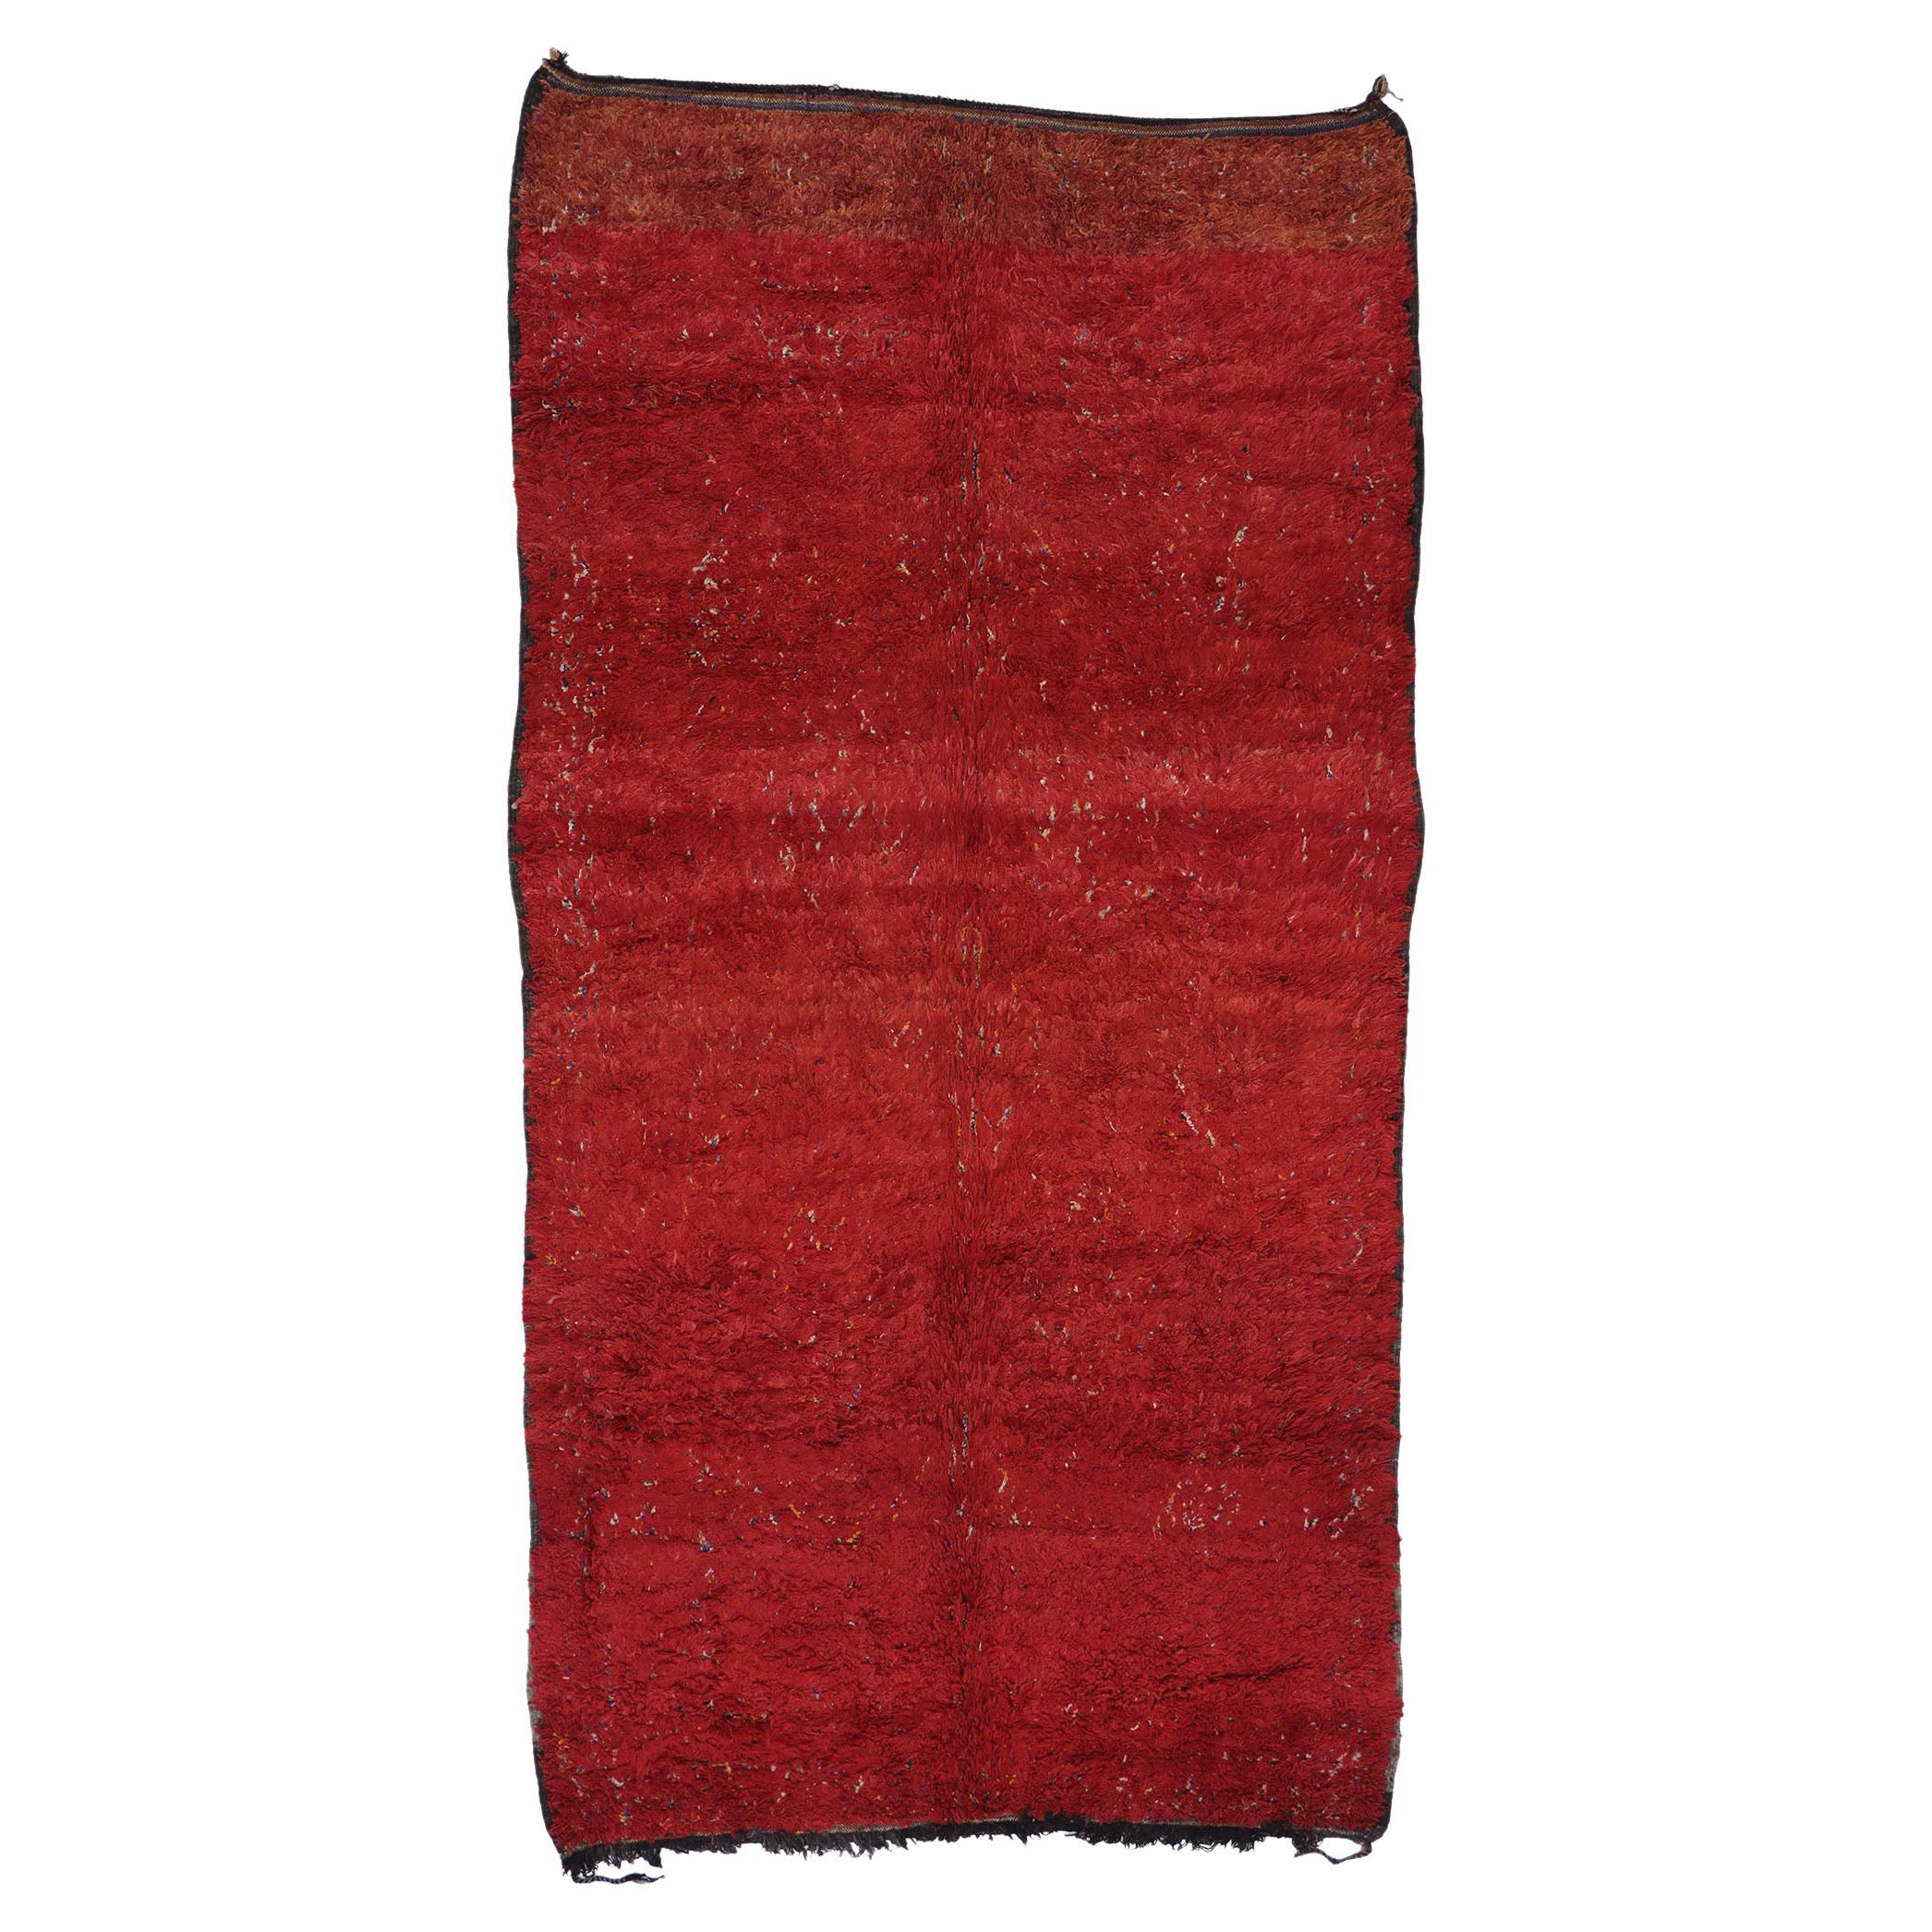 Tapis berbère rouge vintage de la guilde Beni M'Guild marocaine avec style tribal